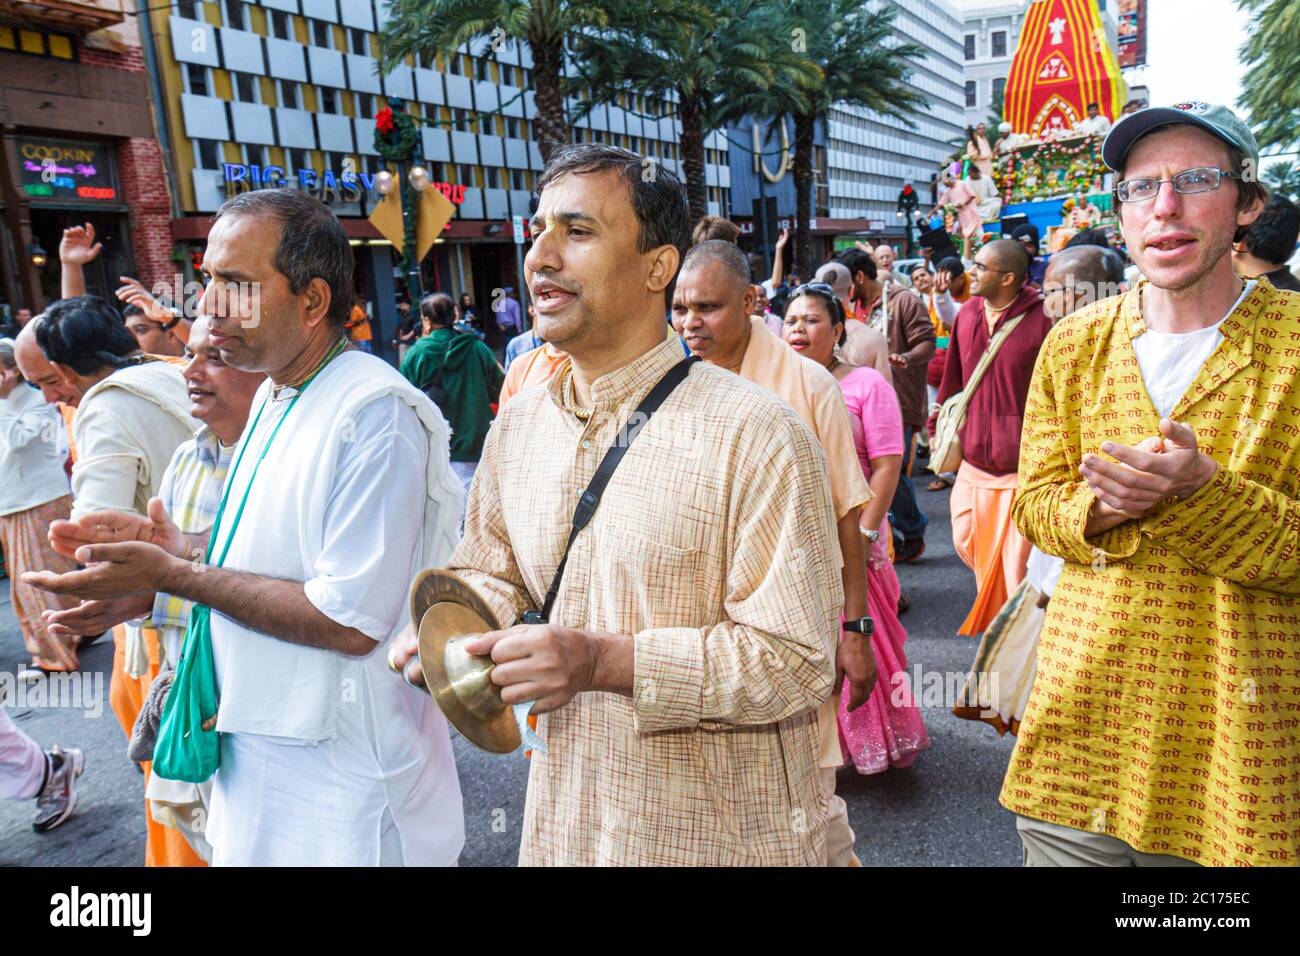 New Orleans Louisiana, centro, Canal Street, Festival of India, Rath Yatra, Hare Krishna, Induismo, religione orientale, festival, sfilata, processione, Asian Asian Foto Stock